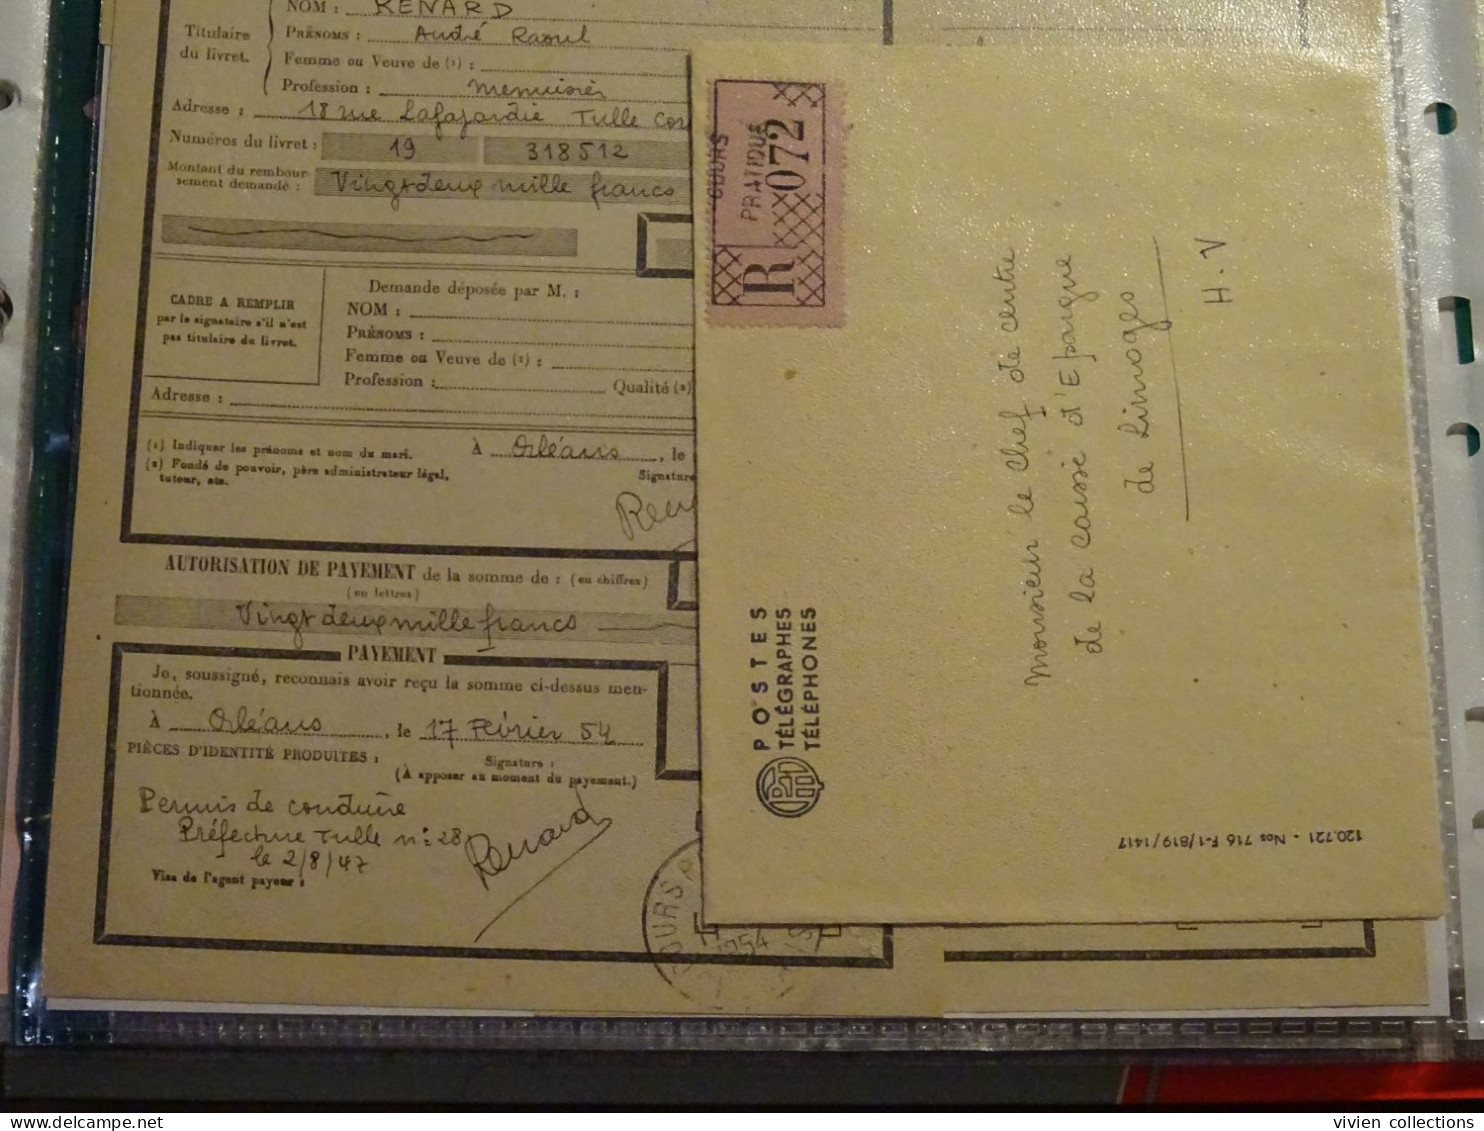 France Cours Pratique D'instruction Orléans 1954 Télégramme Remboursement A Vue Partiel CNE M. Renard Menuisier à Tulle - Cursussen